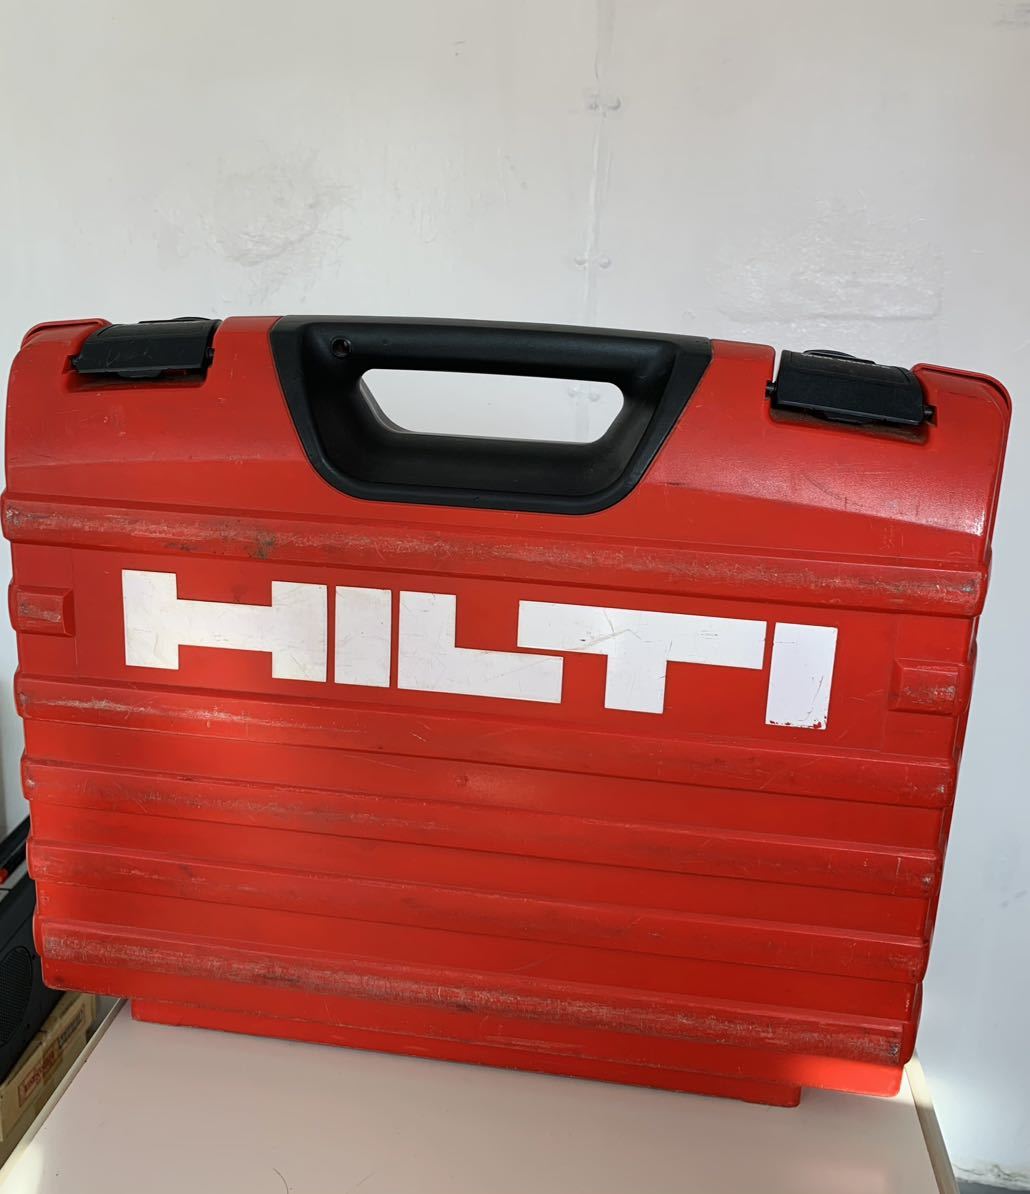 HILTI ヒルティ WRS900-PE レシプロソー 100V 電動のこぎり 切断機 金属 木工 電動工具 説明書/ケース付きい_画像3